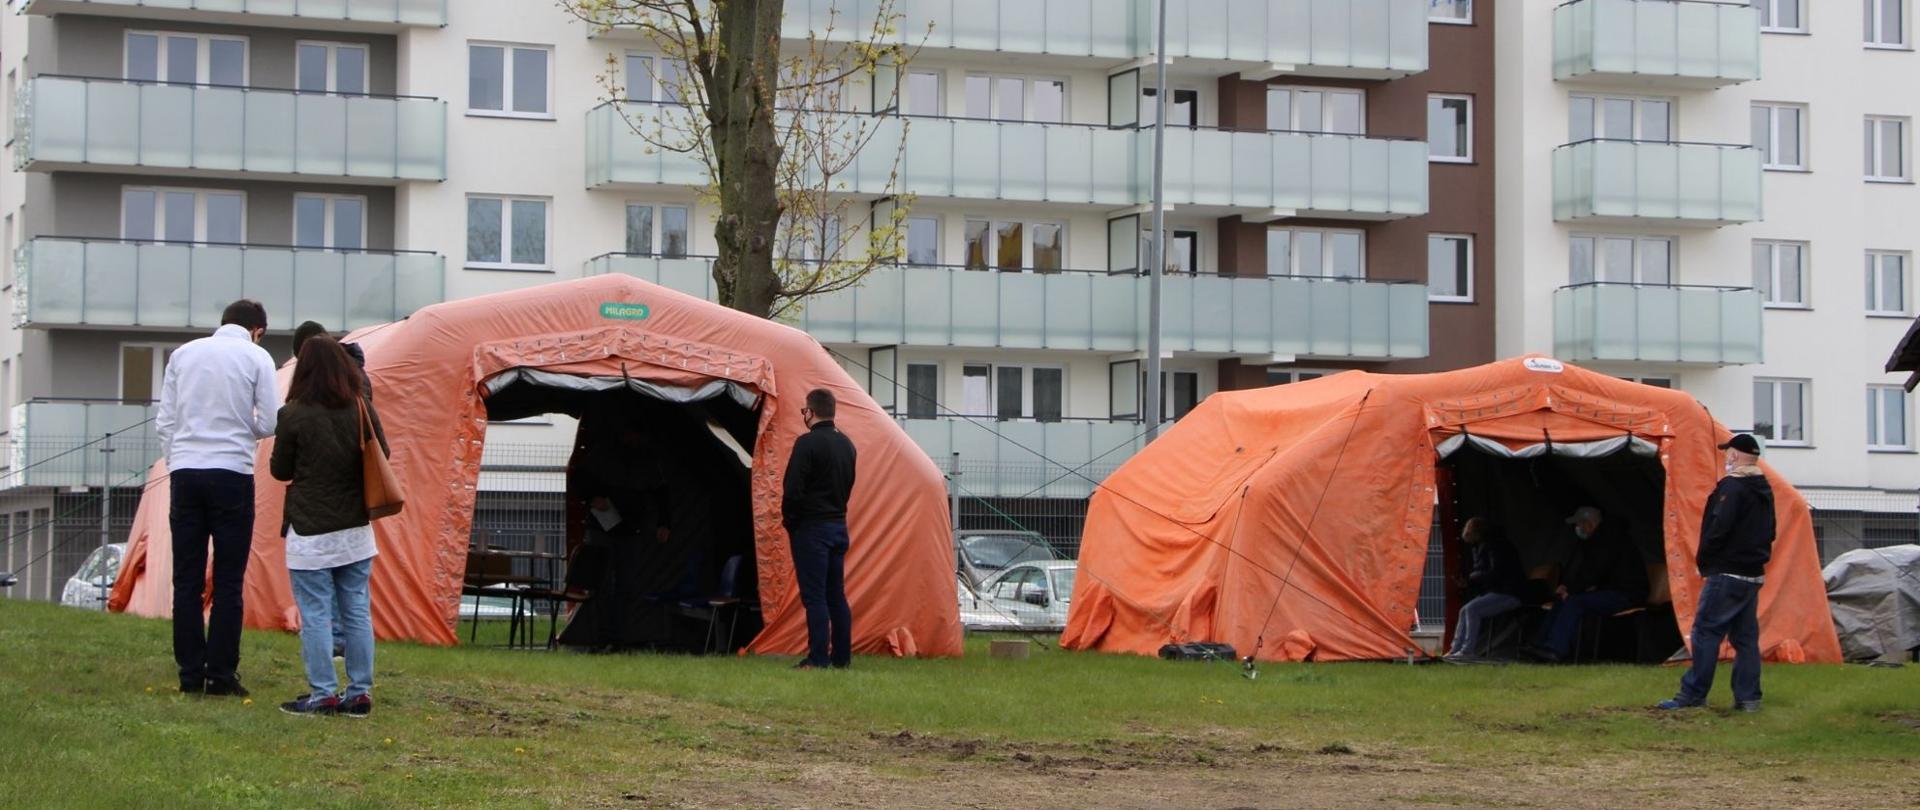 na zdjęciu znajdują się dwa pomarańczowe namioty, a w nich są ludzie, w tle widać wielomieszkaniowy blok